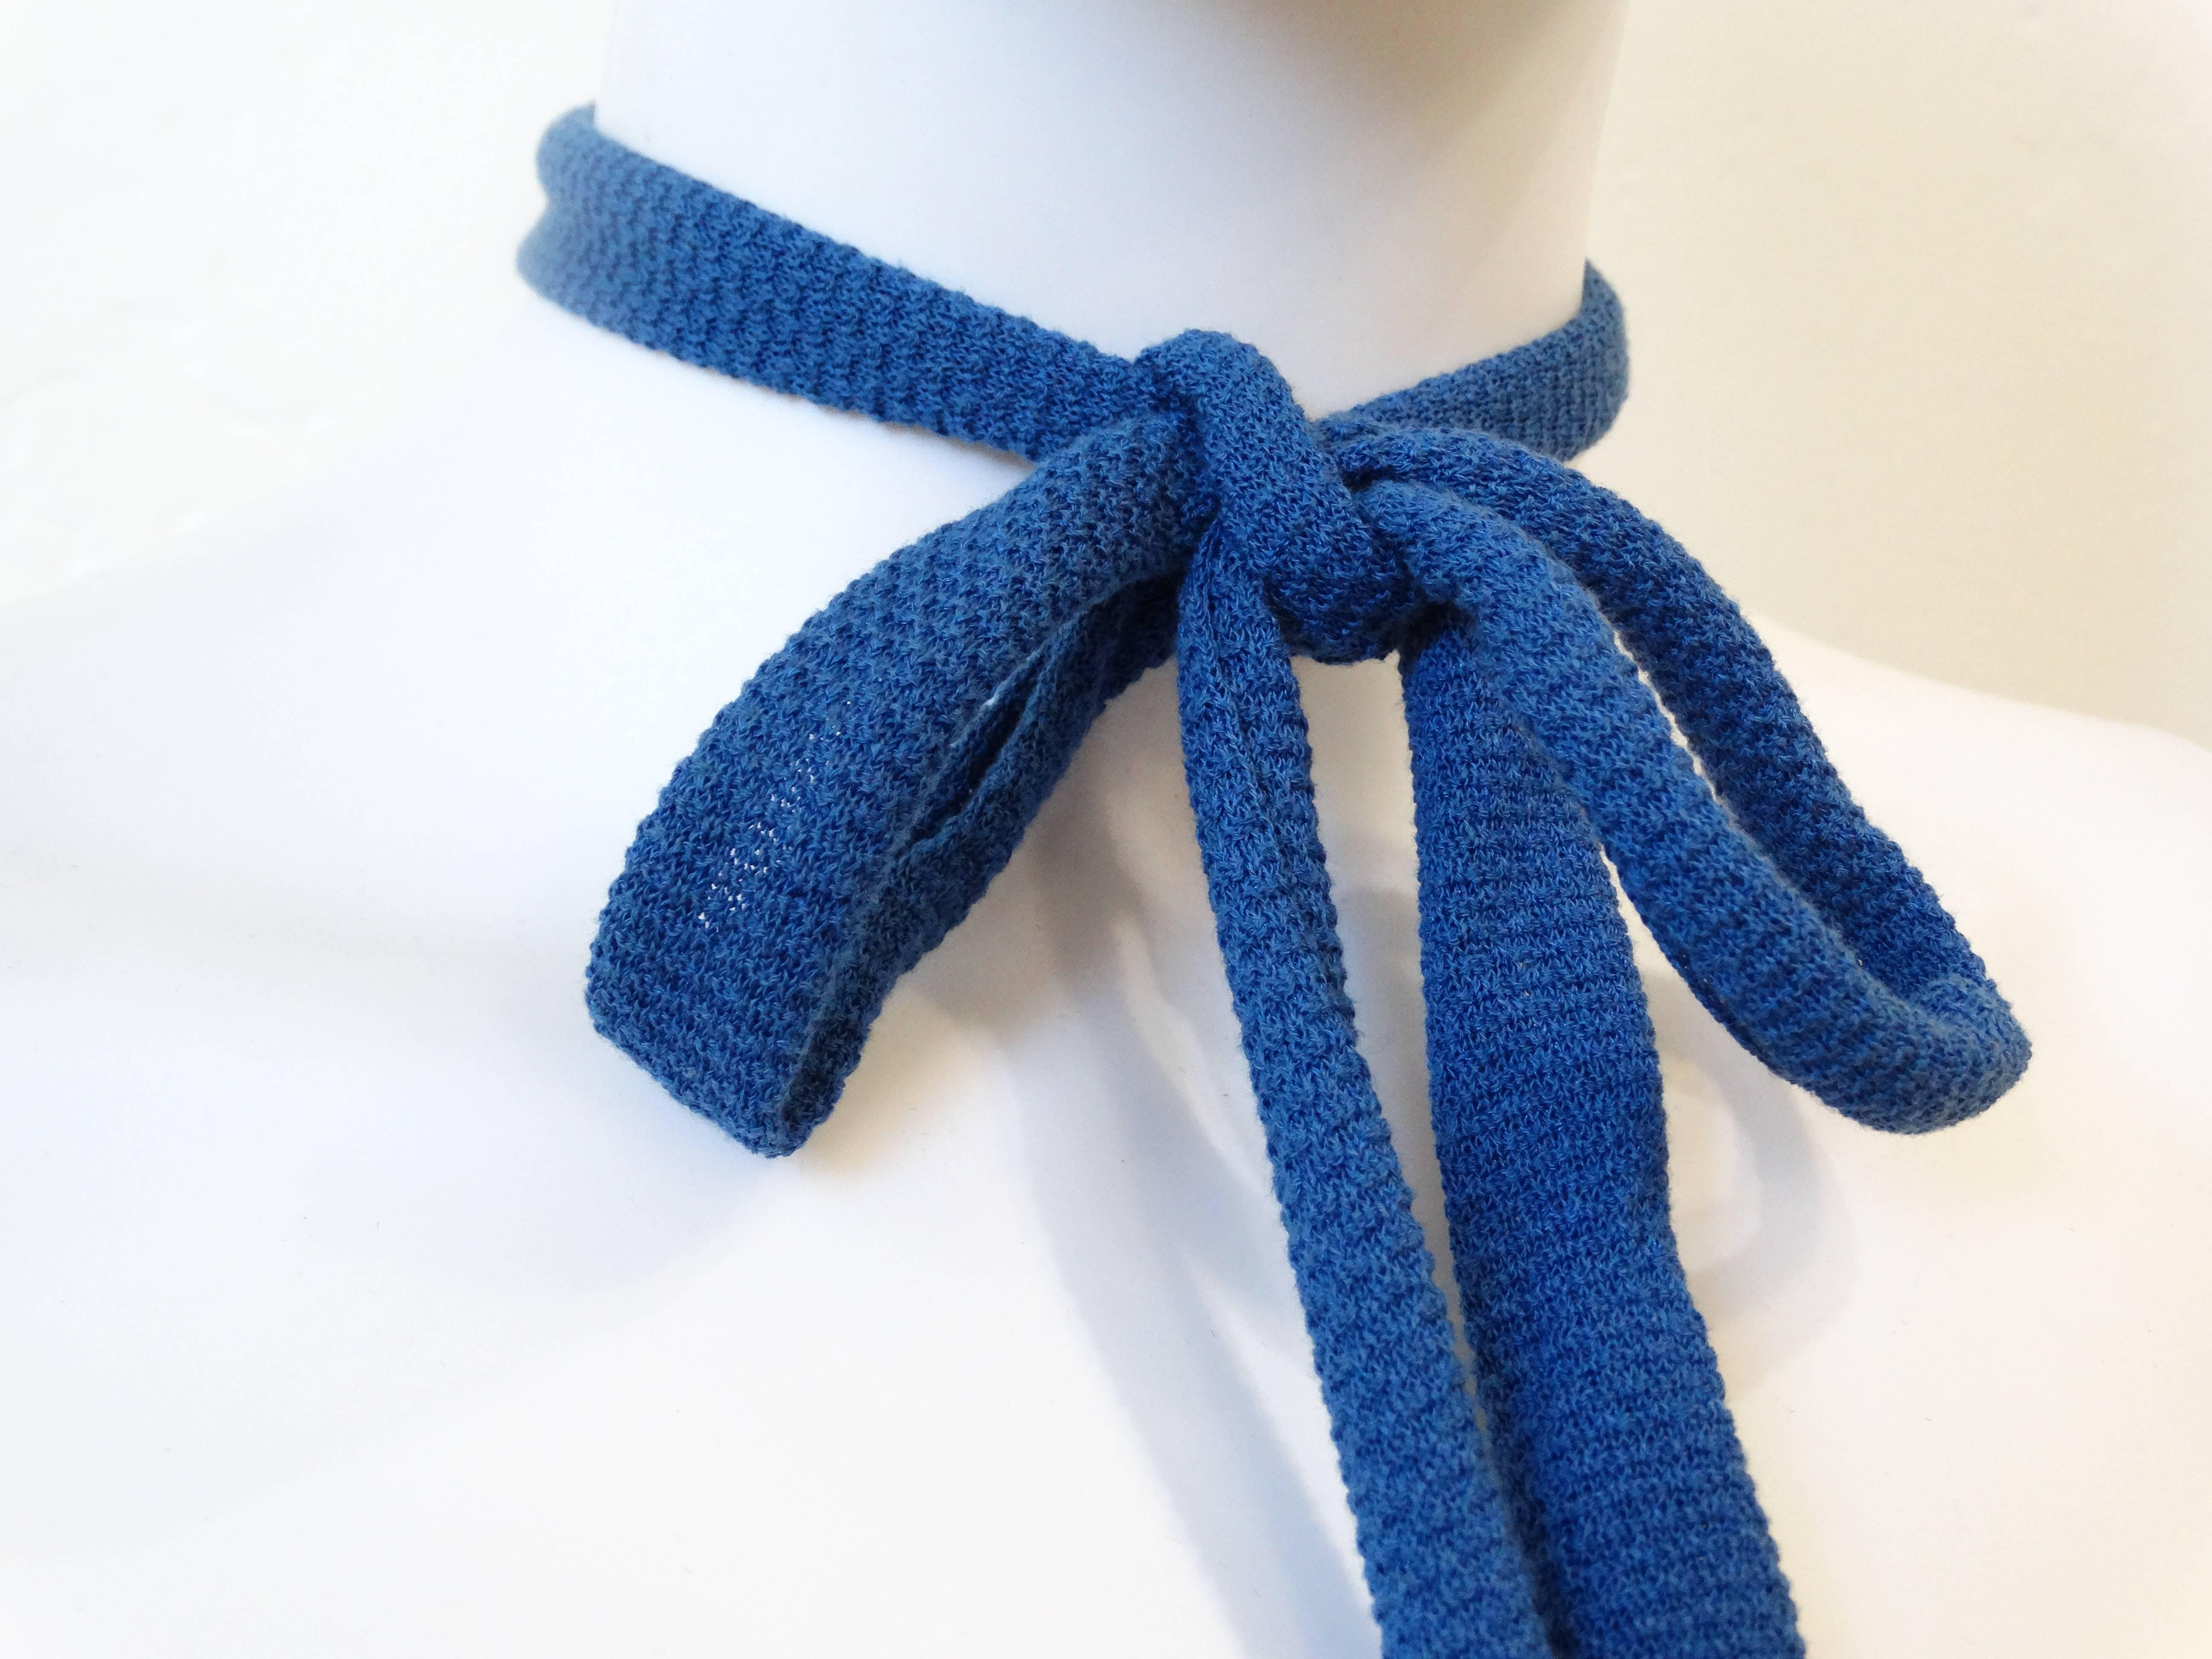 Schön und flippig ist diese LANVIN Seiden Pique Stitch Western Bow Krawatte  ist das perfekte Accessoire. Neu mit Tags in der perfekten Farbton von blau MADE IN FRANCE Lanvin Etikett angebracht.

